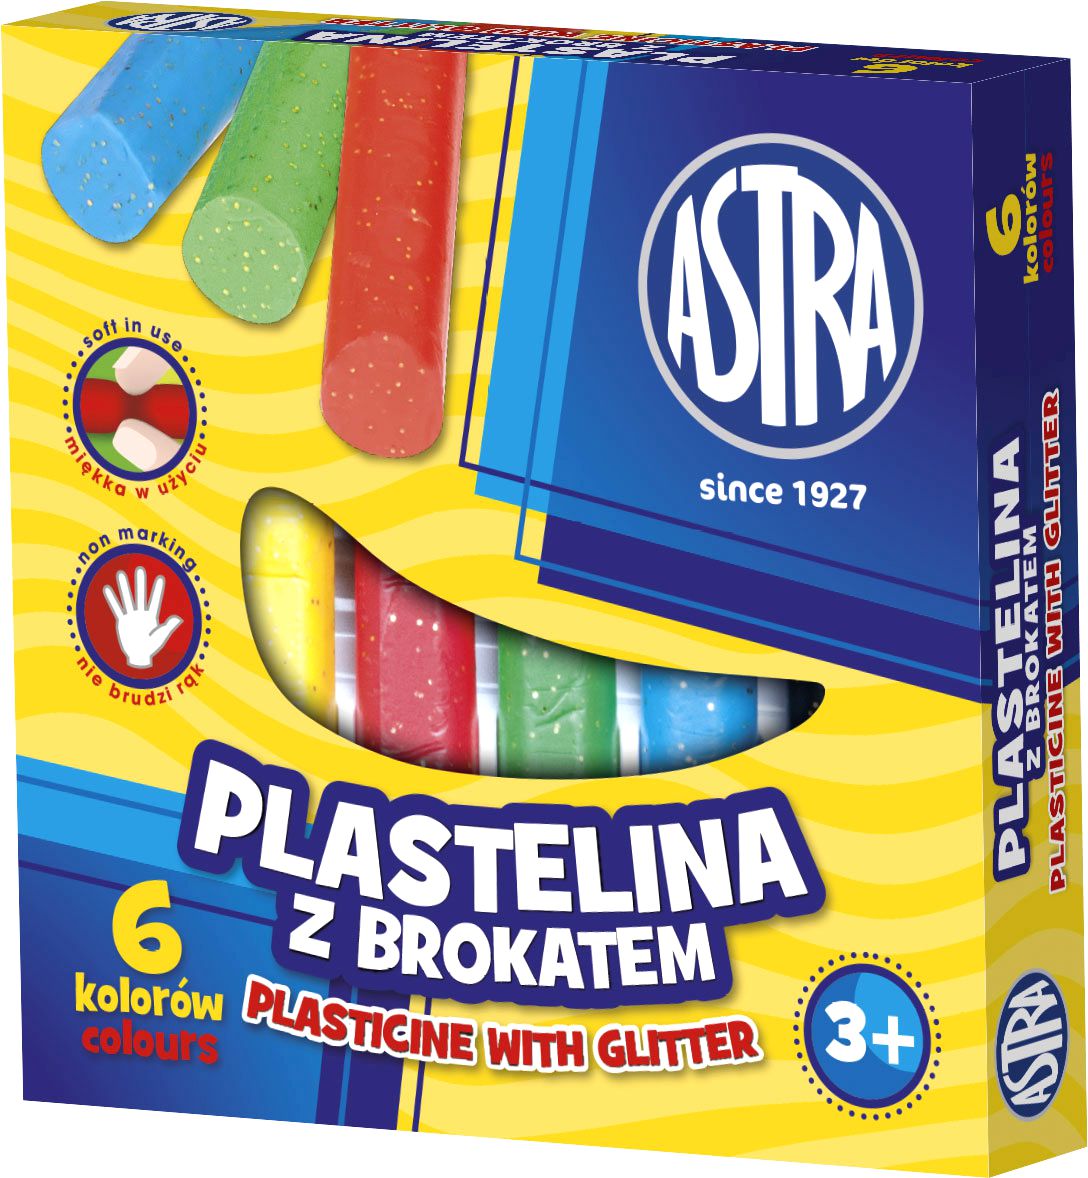 Stationery items Plastelina z brokatem 6 kolorów 